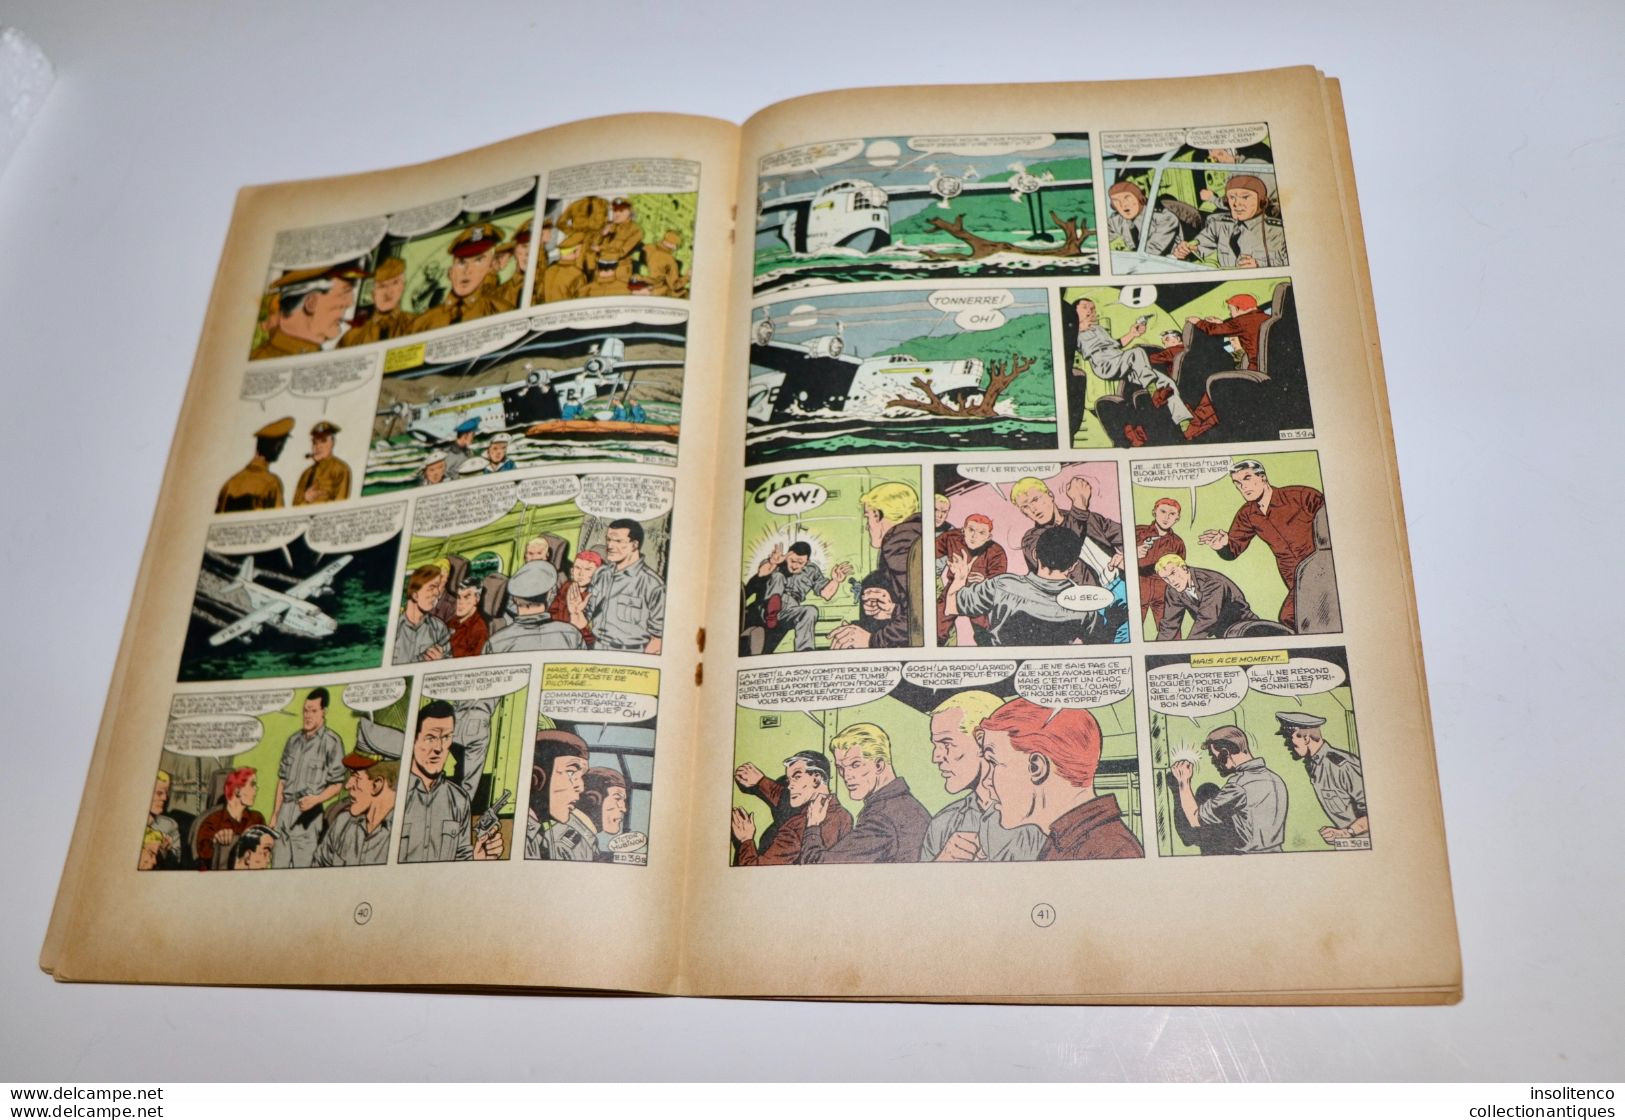 Charlier et Hubinon - Les Aventures de Buck Danny - Les Voleurs de Satellites - T30 - EO 01/1964 - Bon état général